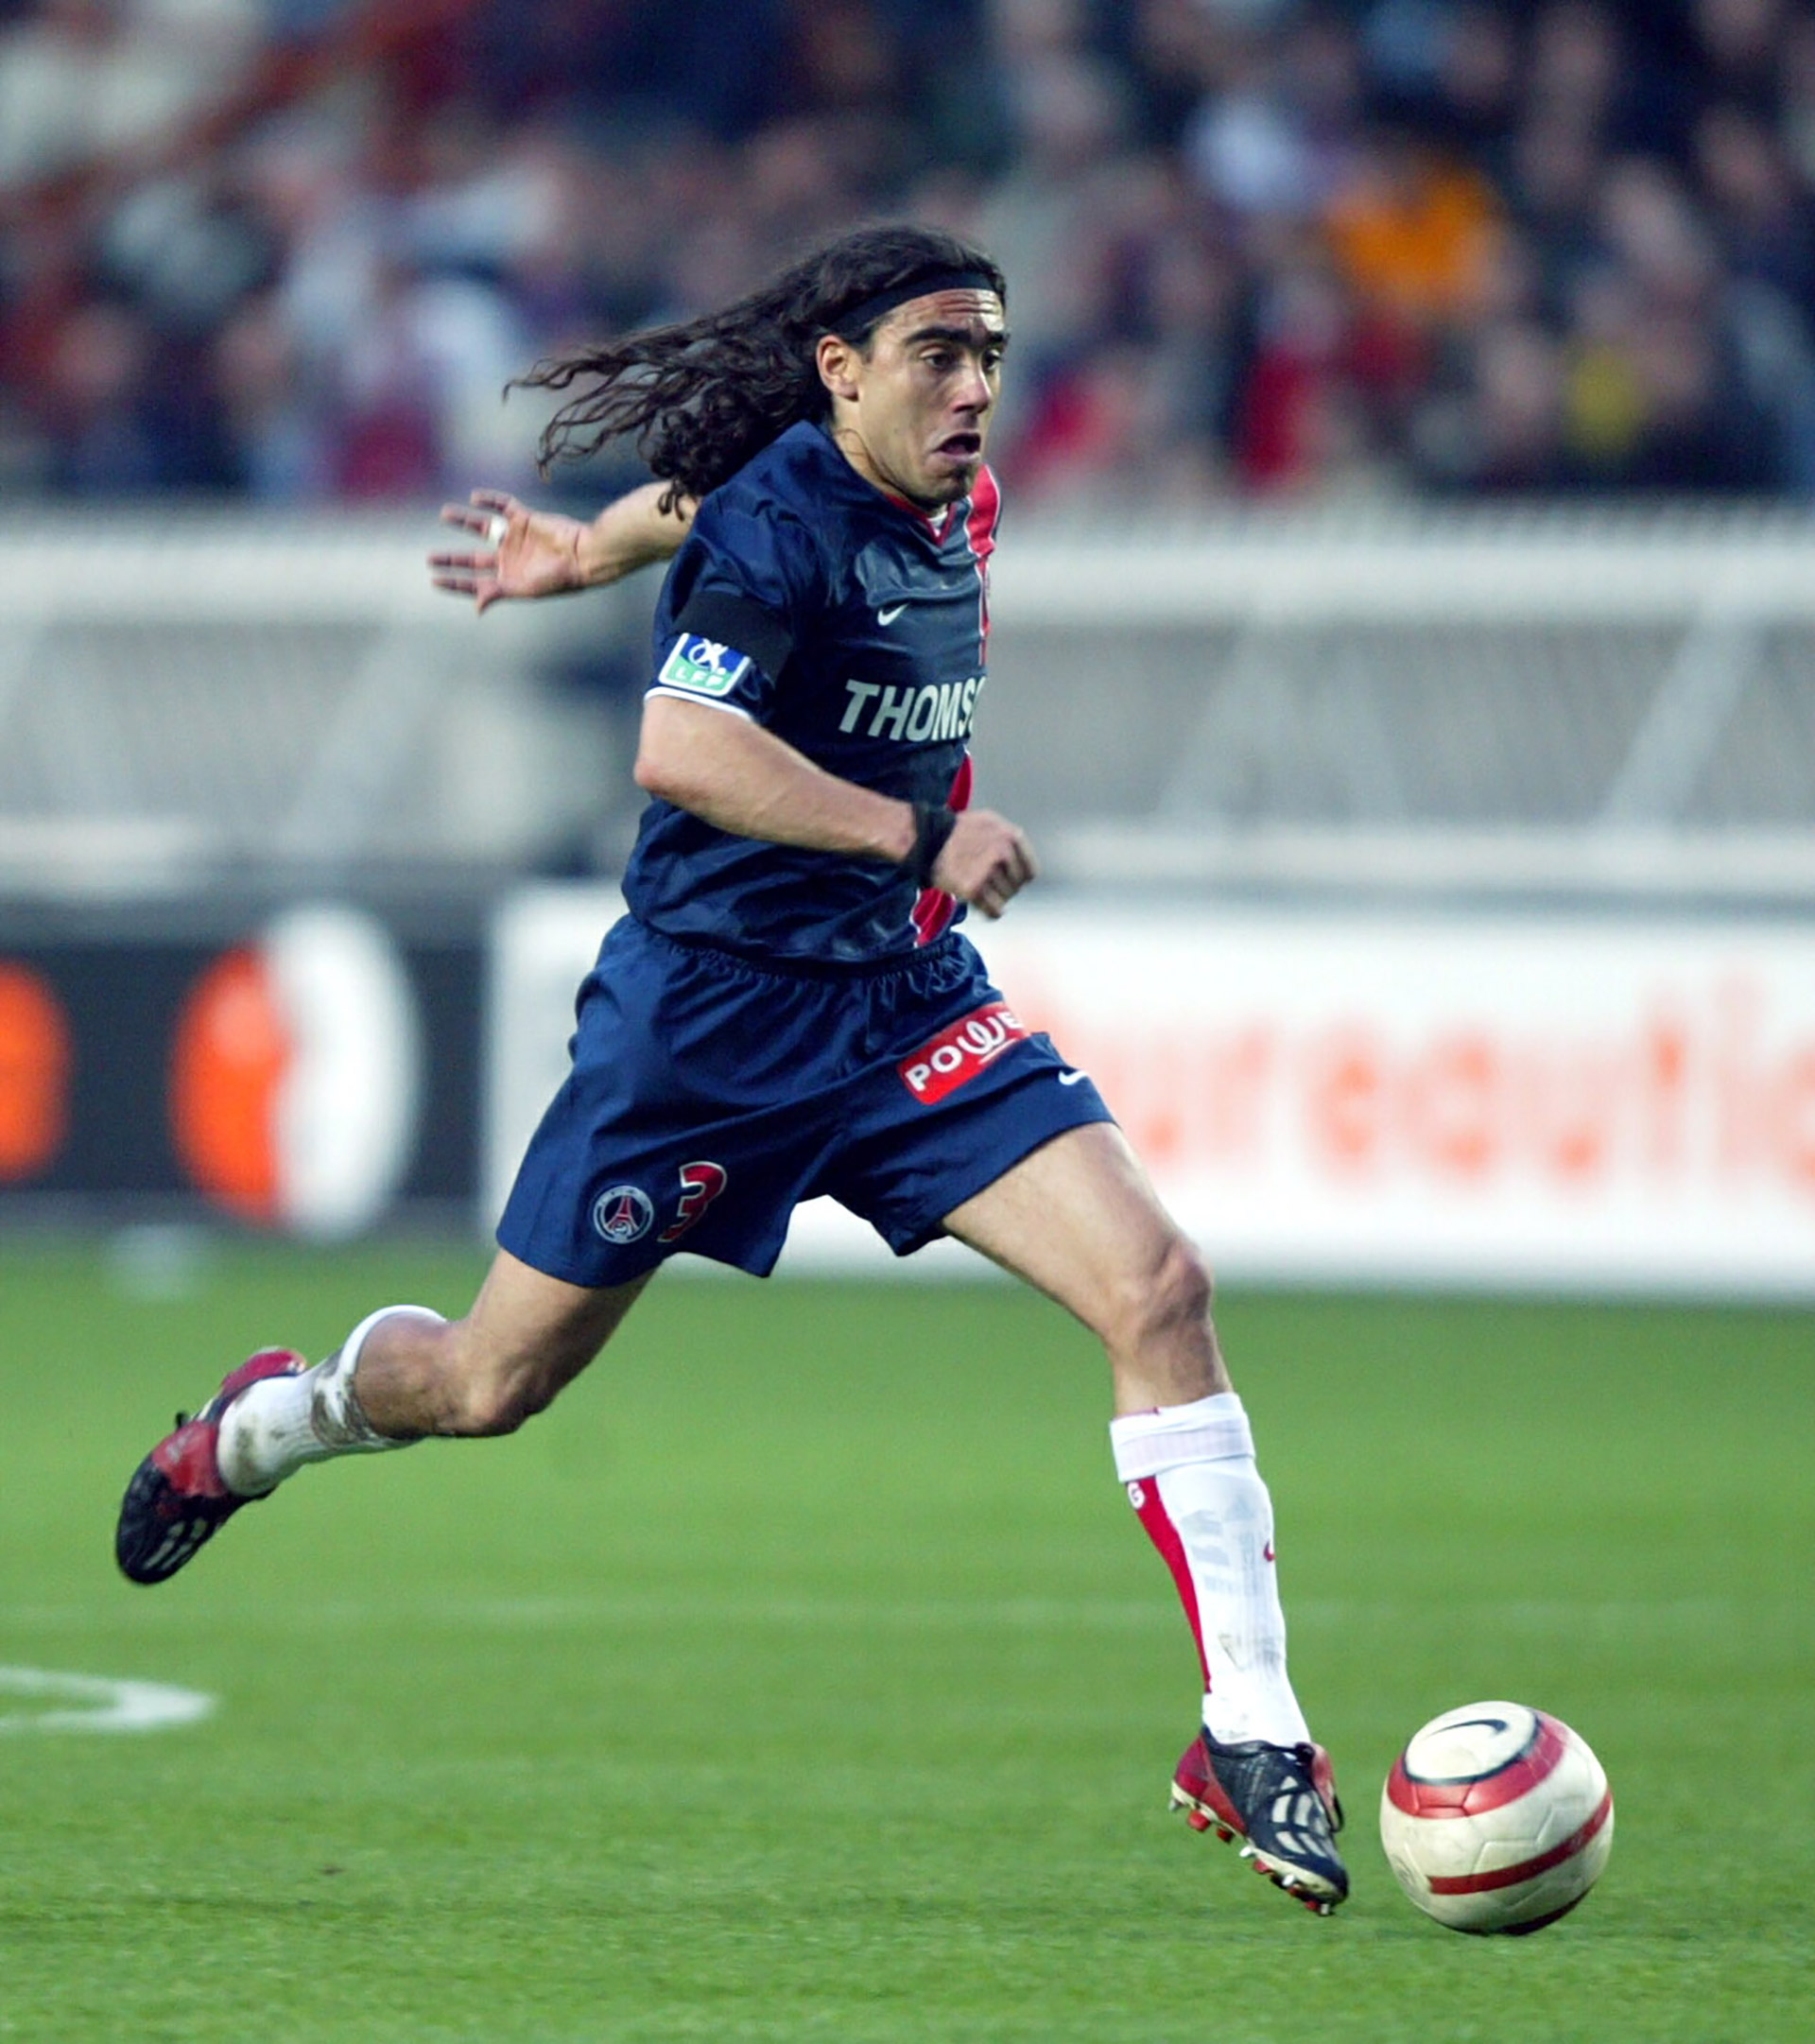 En el verano de 2003 se marcha cedido al París Saint-Germain, con el que gana una Copa de Francia y donde fue elegido jugador más valioso de la temporada, luego de ganar en varias ocasiones el premio de Mejor Jugador del Mes